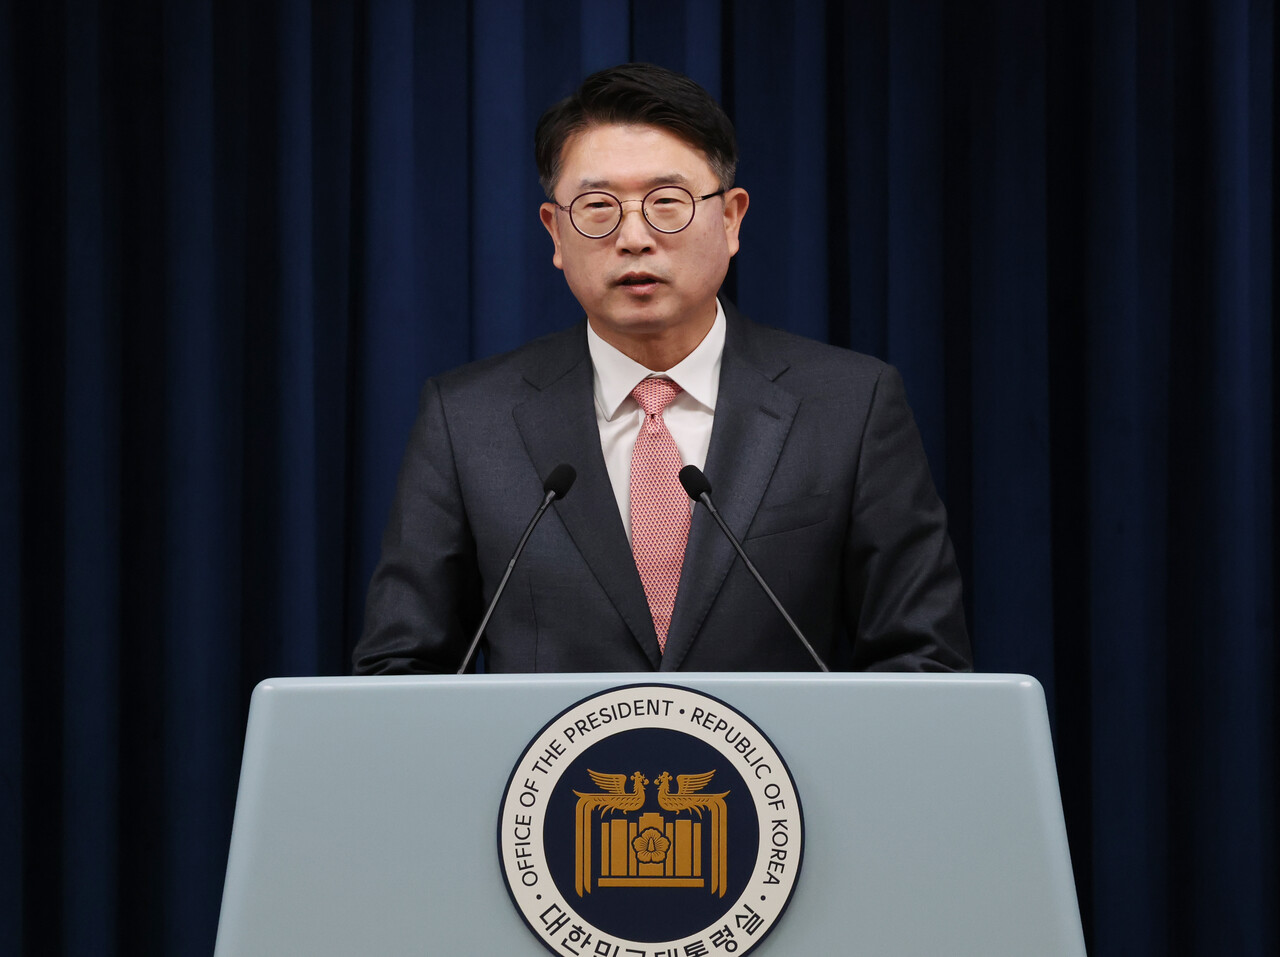 지난 11월 30일 장상윤 신임 대통령실 사회수석이 서울 용산 대통령실 청사에서 임명 소감을 밝히고 있다.